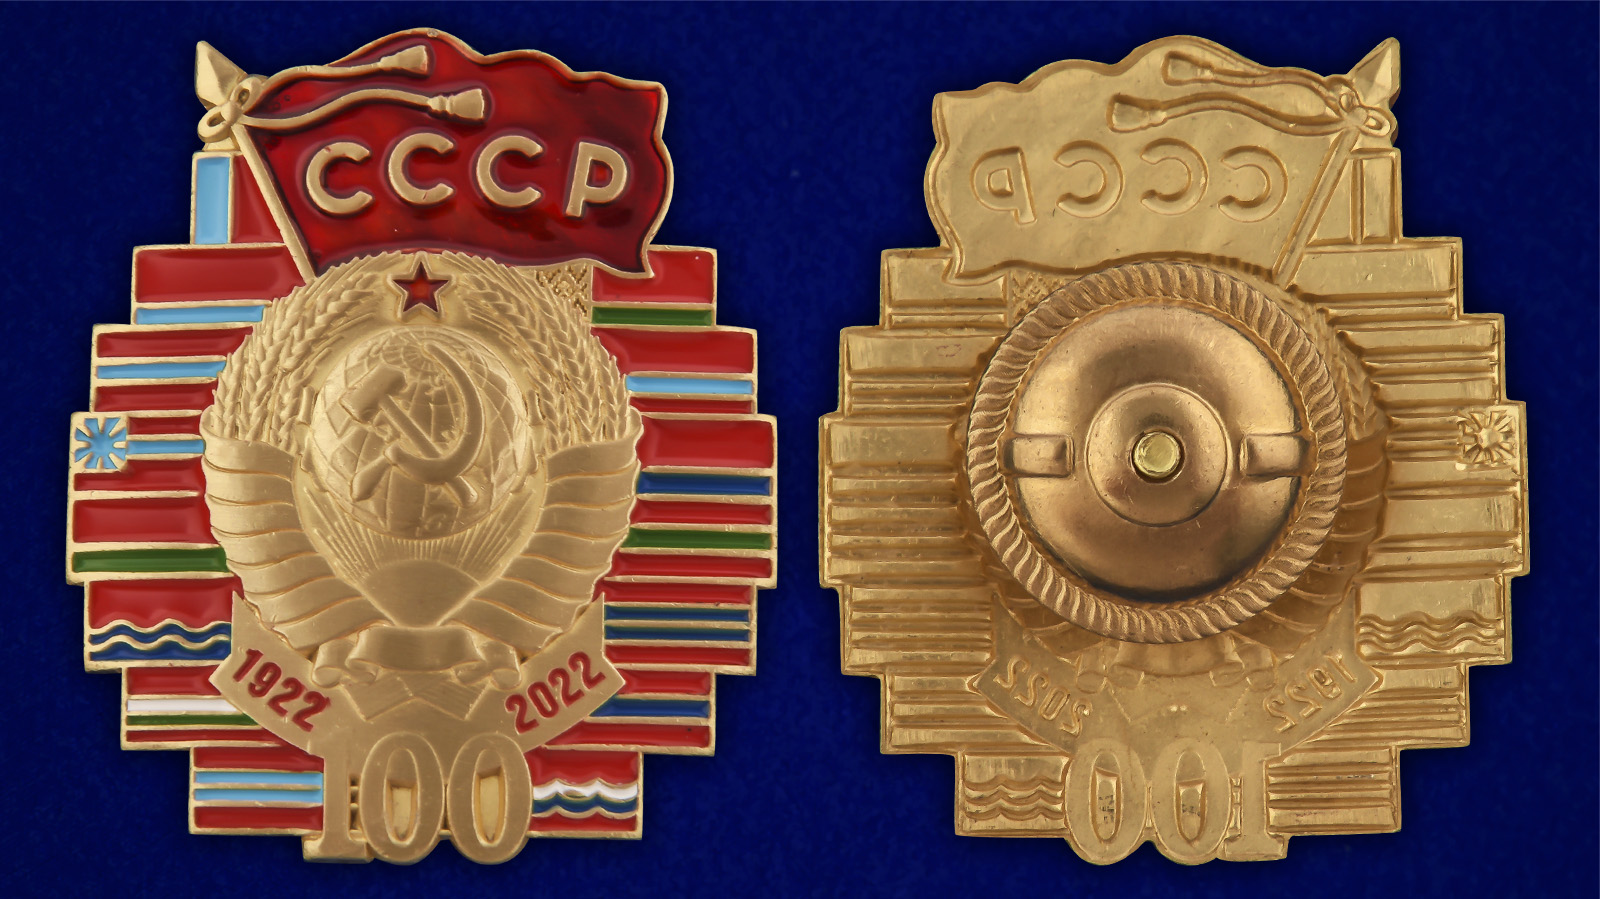 Значок «100 лет СССР»